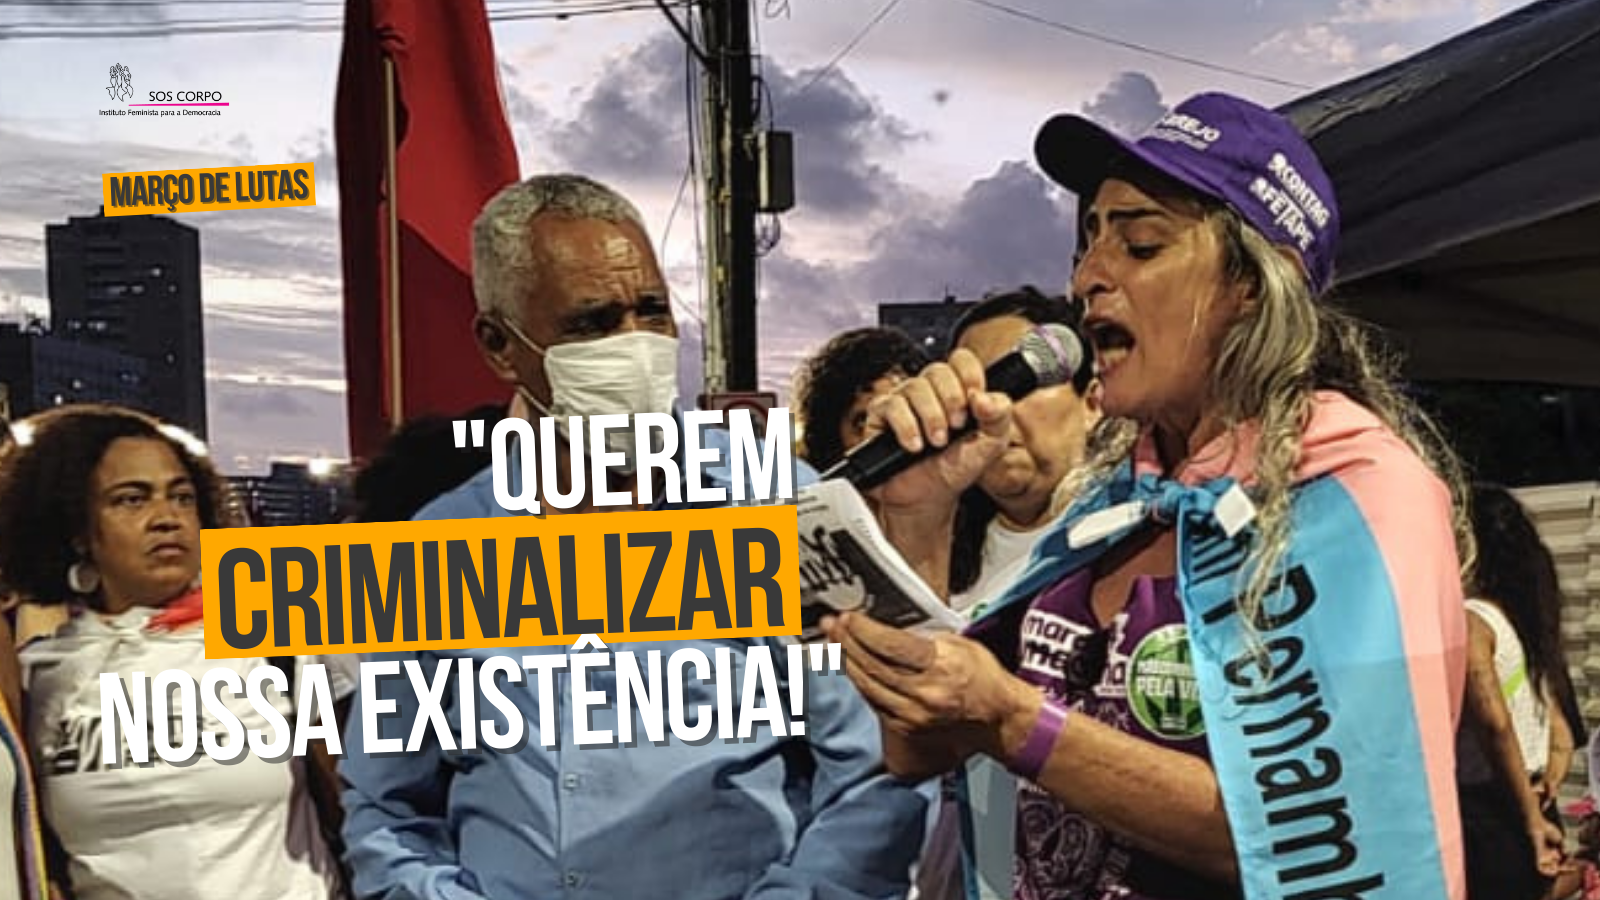 Março de lutas: “Querem criminalizar nossa existência!”